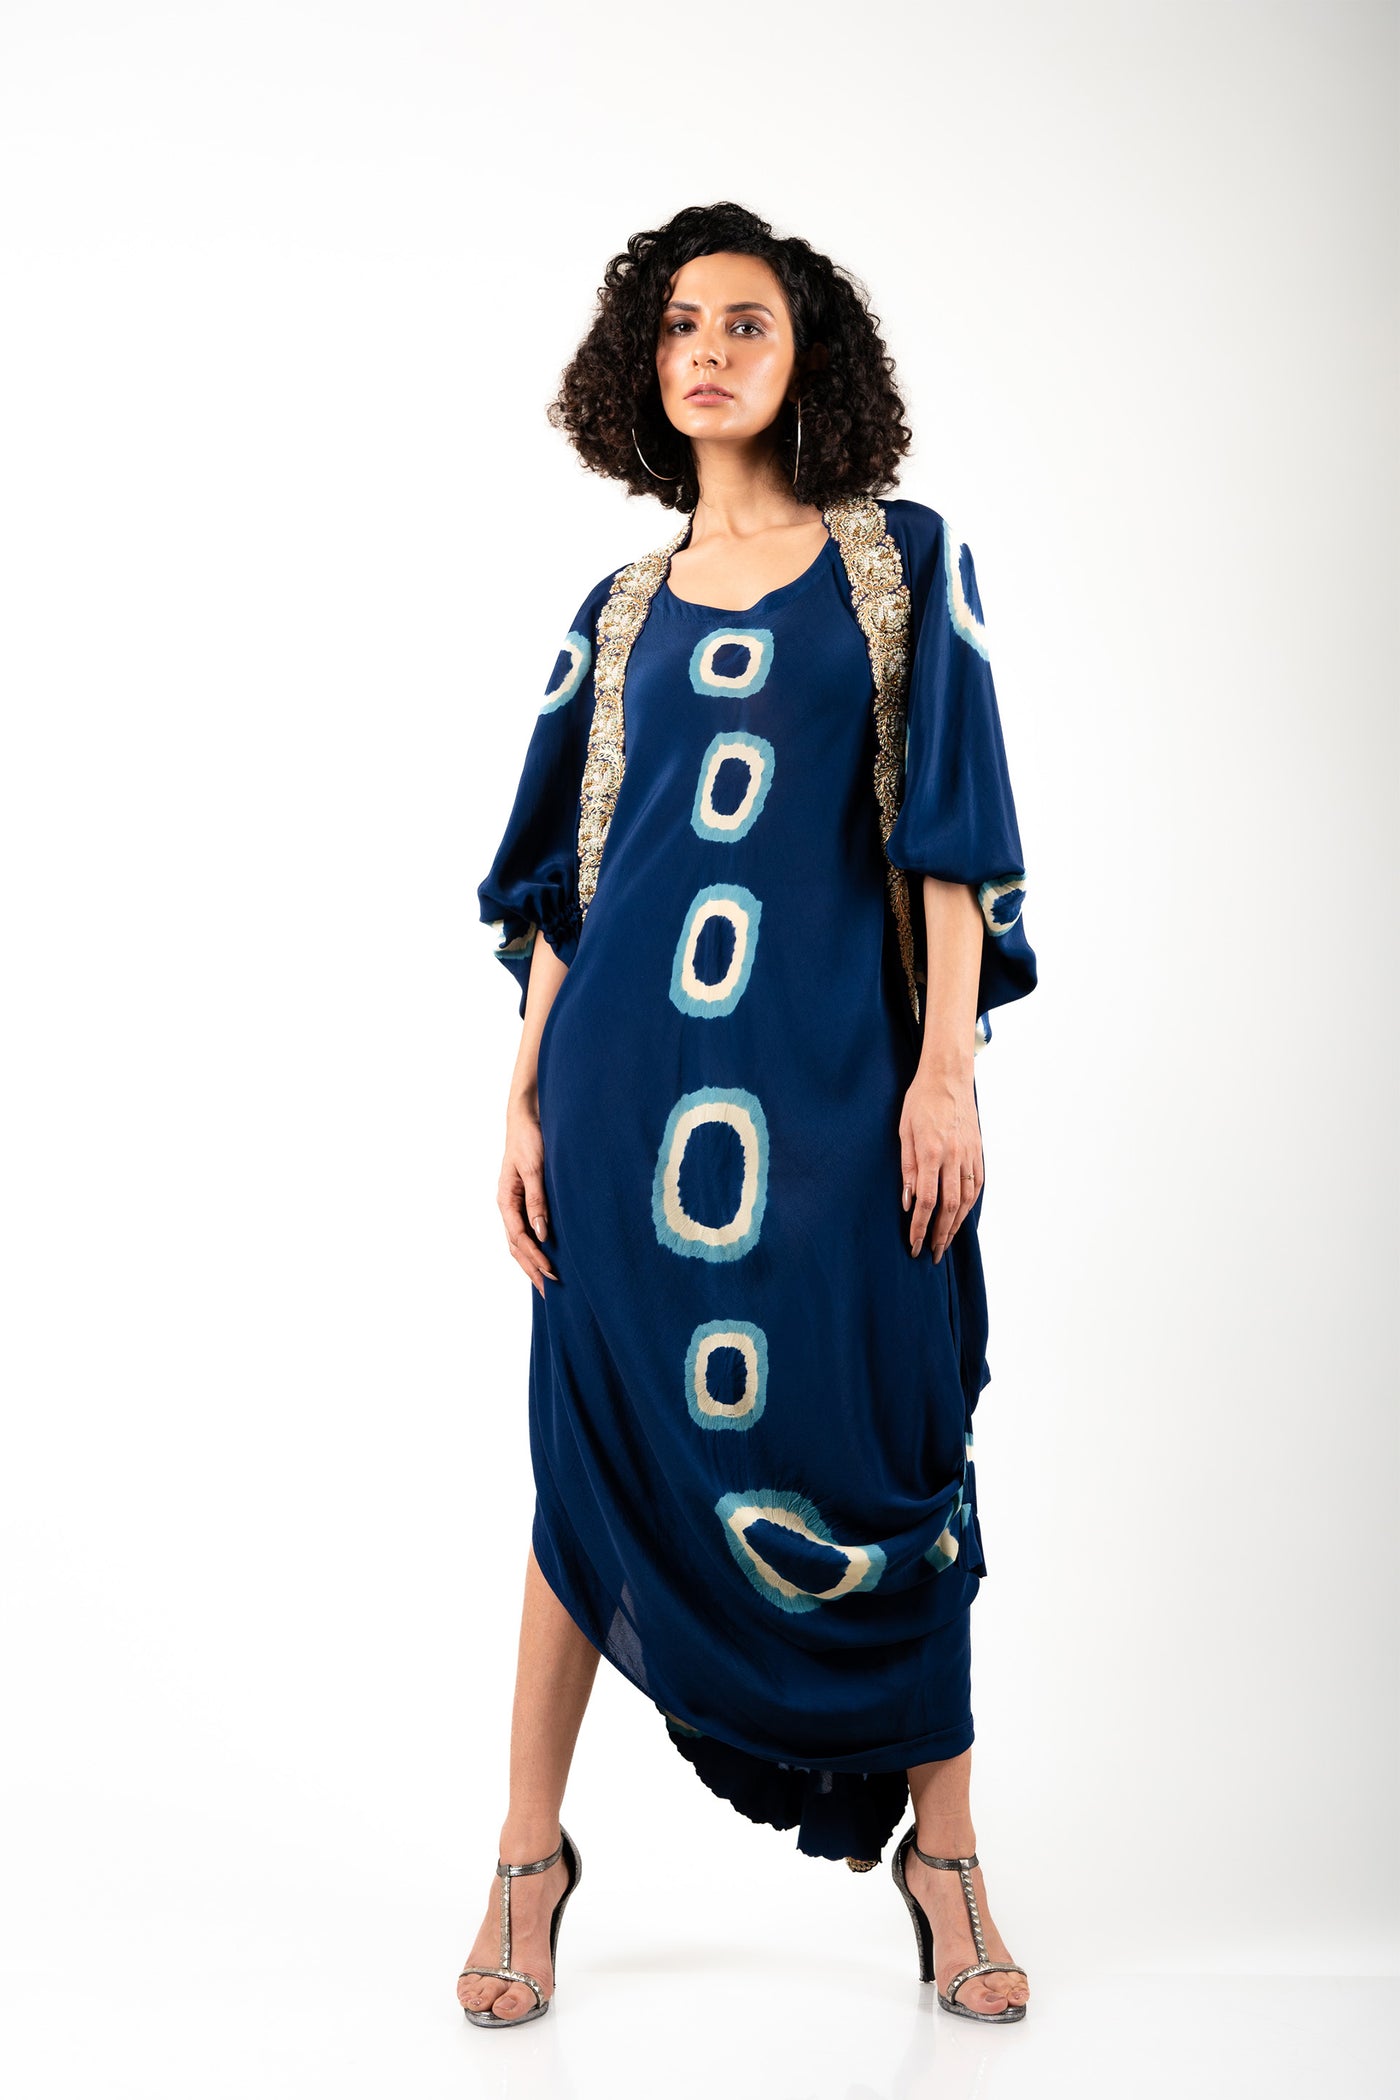 Nupur Kanoi Jacket With Dress Set blue off white festive fusion indian designer wear online shopping melange singapore